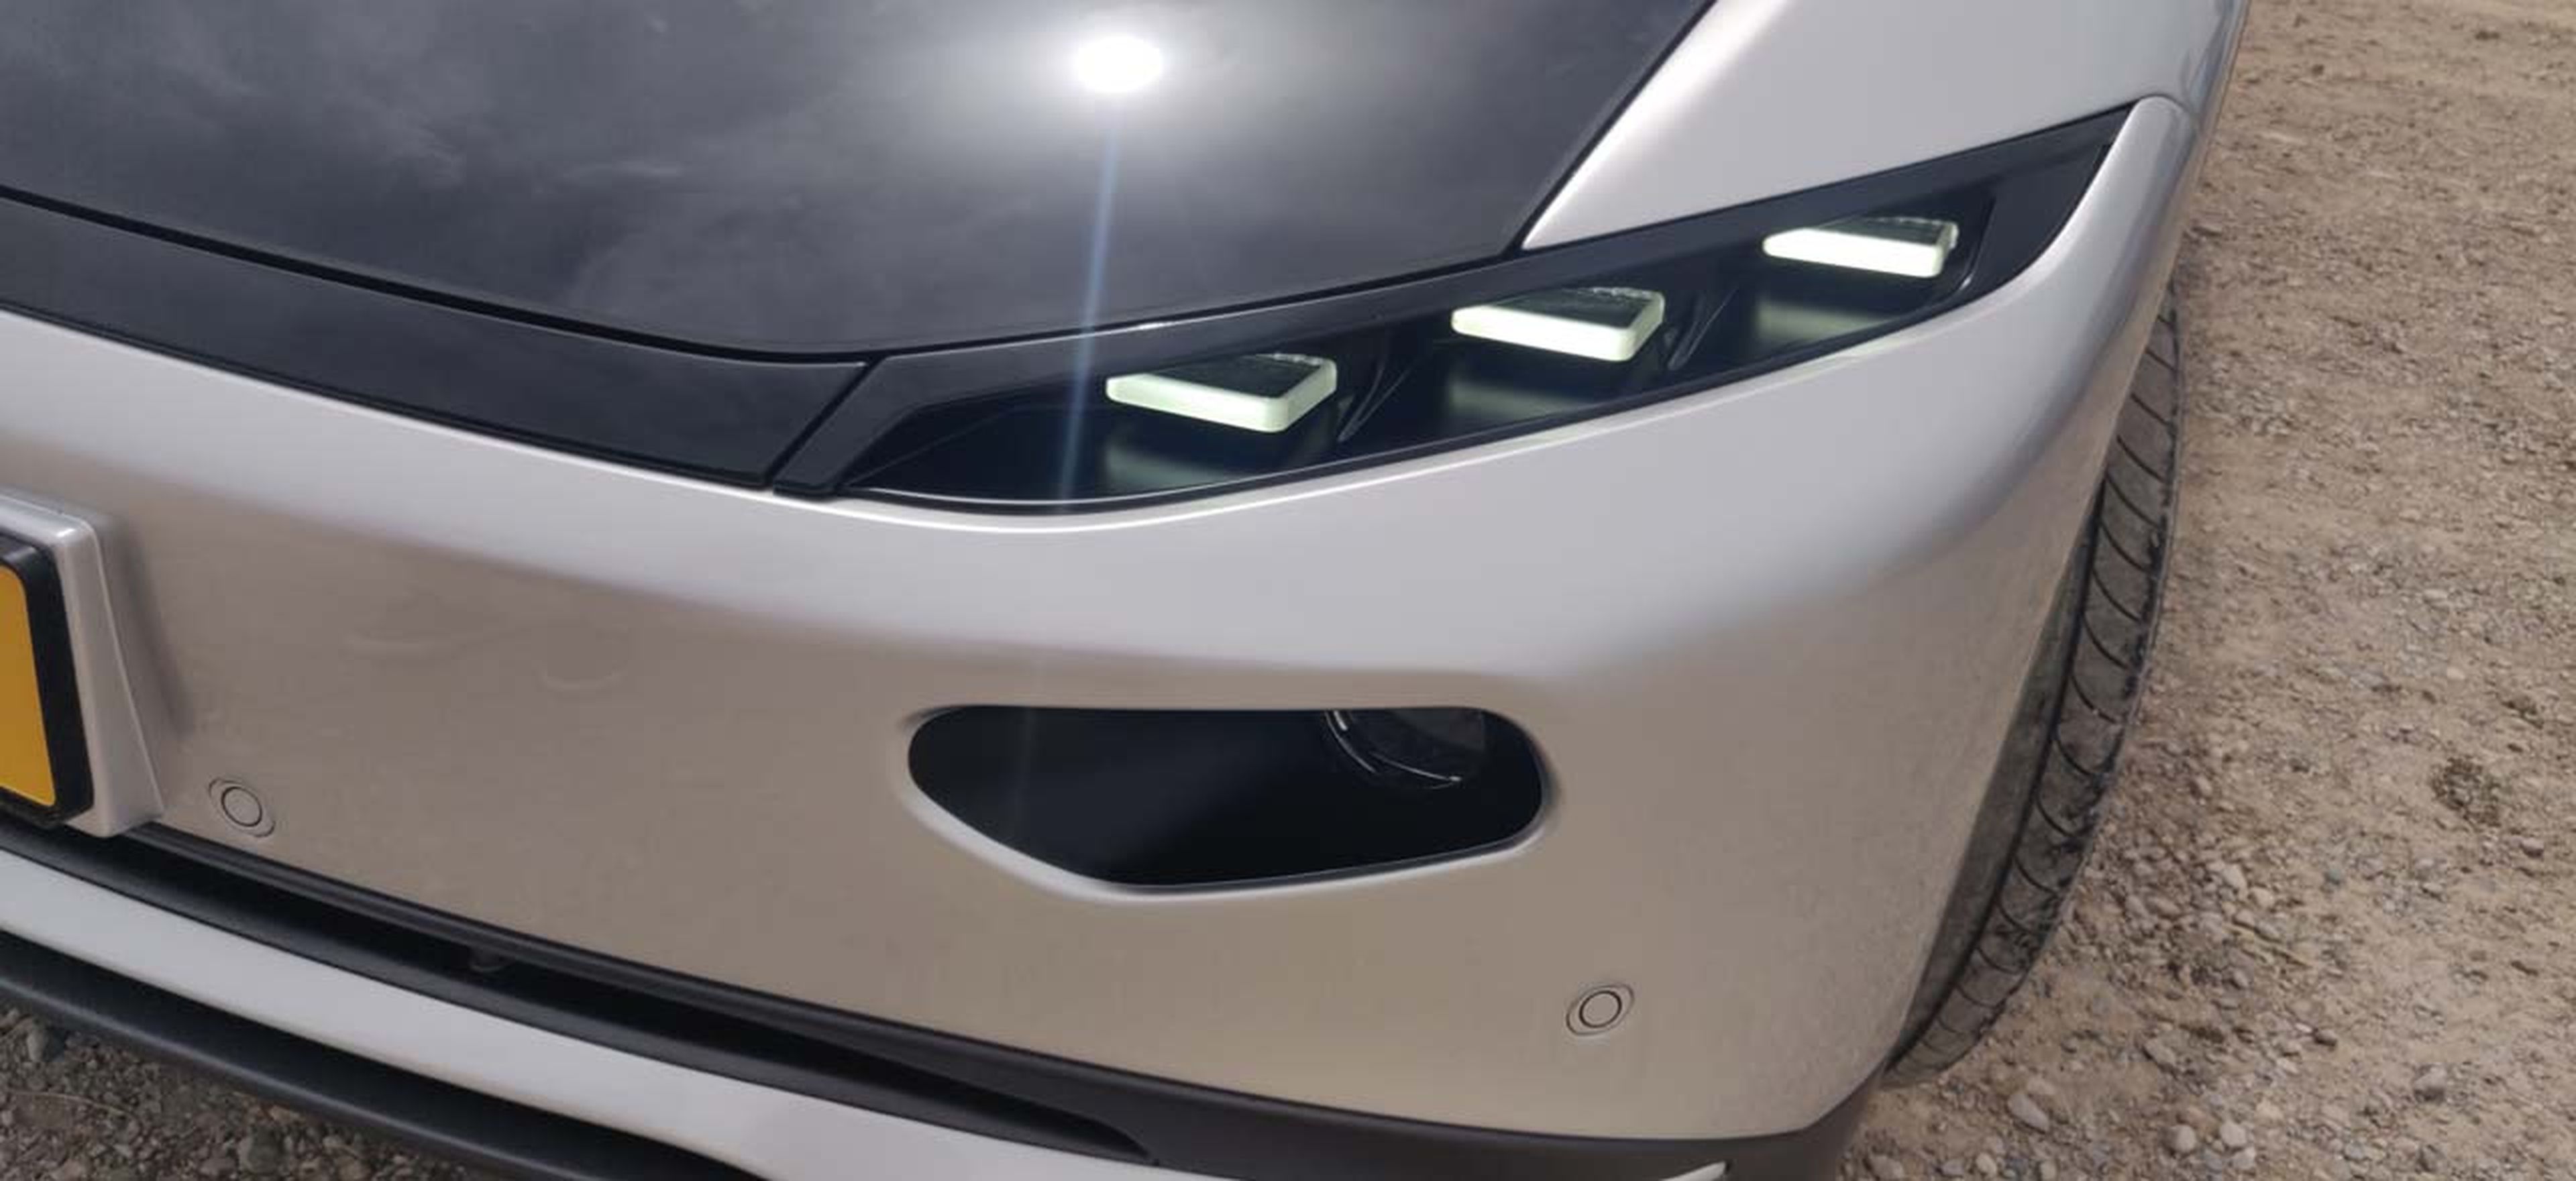 Prueba del Lightyear 0, el coche eléctrico que se recarga con el sol